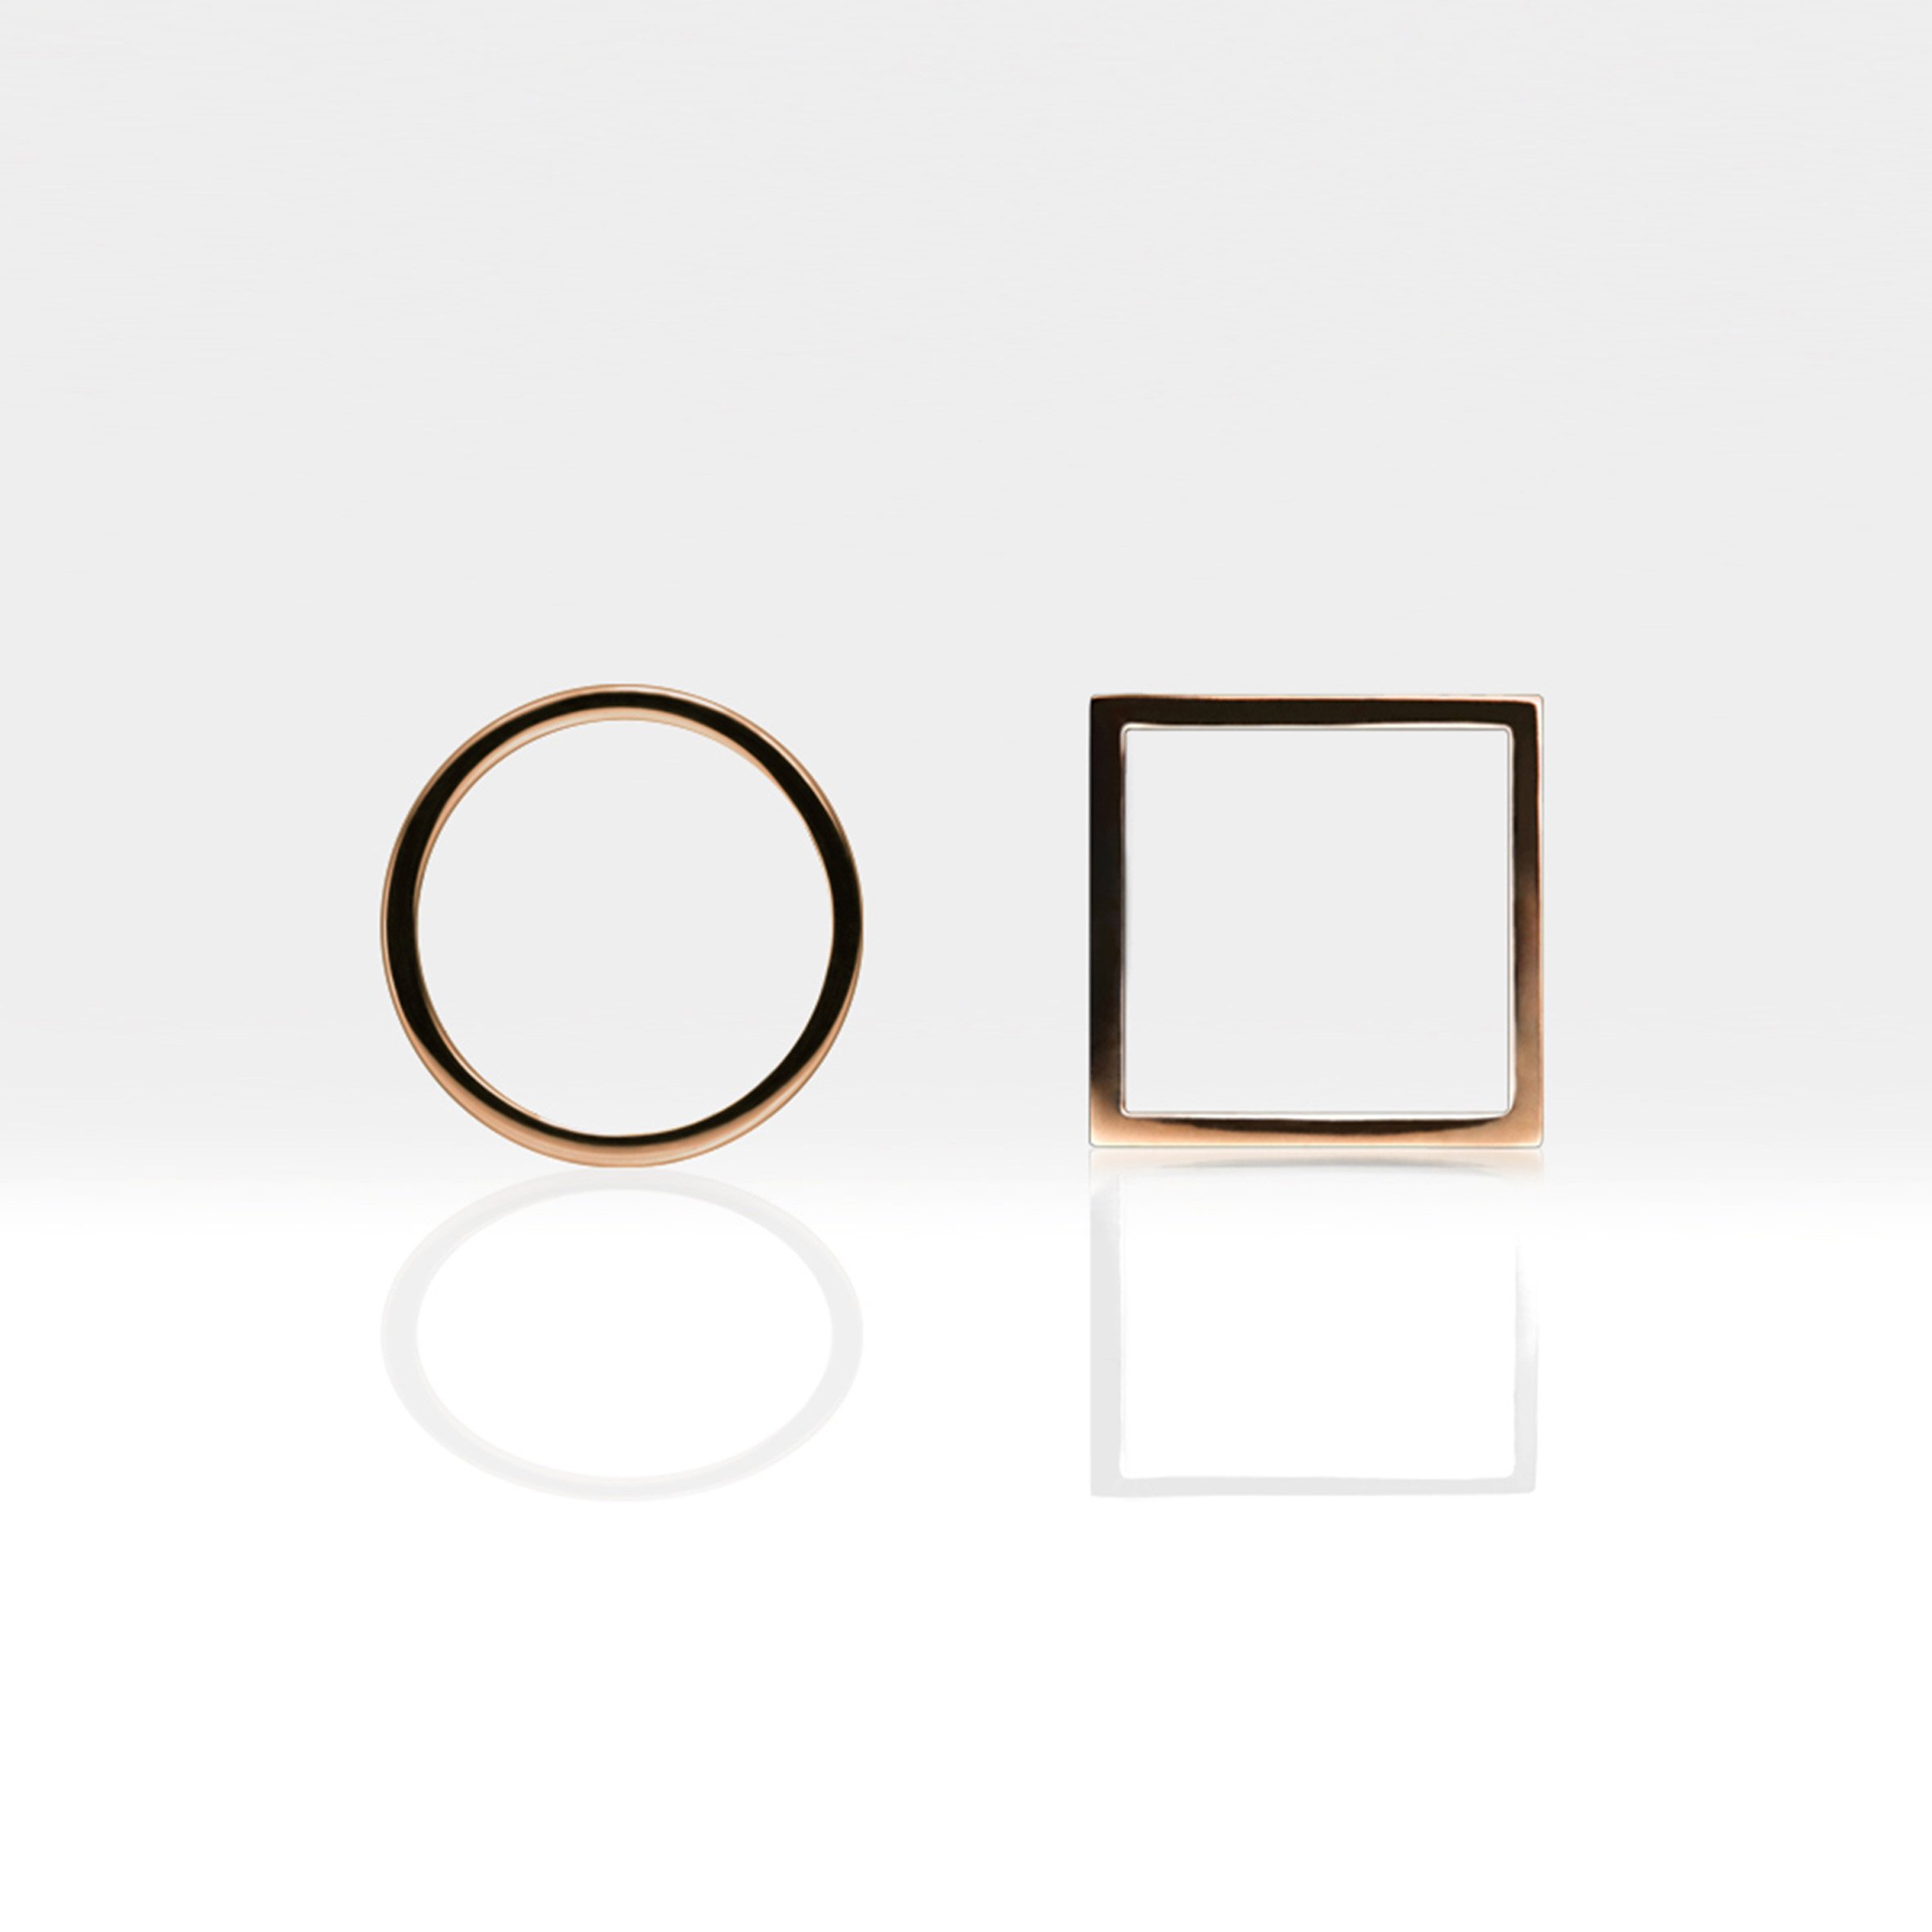 Компания Minimalux запускает коллекцию ювелирных изделий геометрической формы